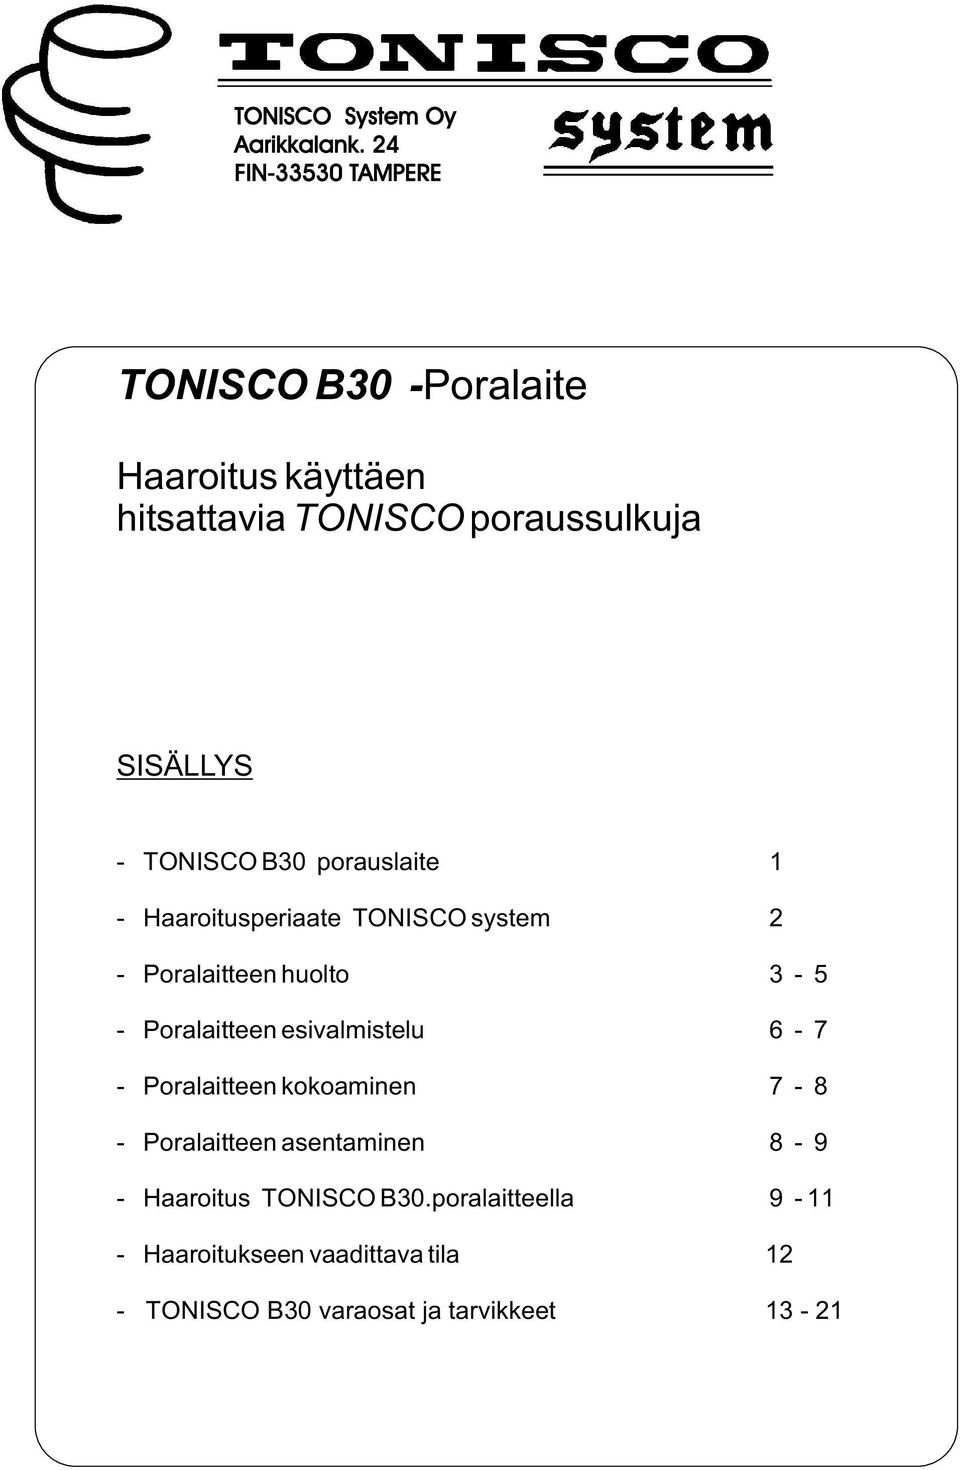 TONISCO B30 porauslaite 1 - Haaroitusperiaate TONISCO system 2 - Poralaitteen huolto 3-5 - Poralaitteen